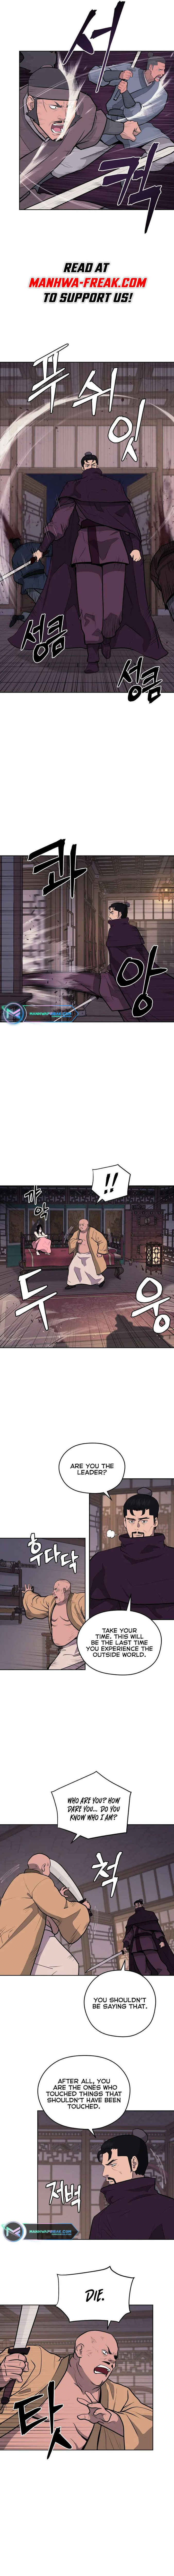 Kang-jin Lee - chapter 93 - #3